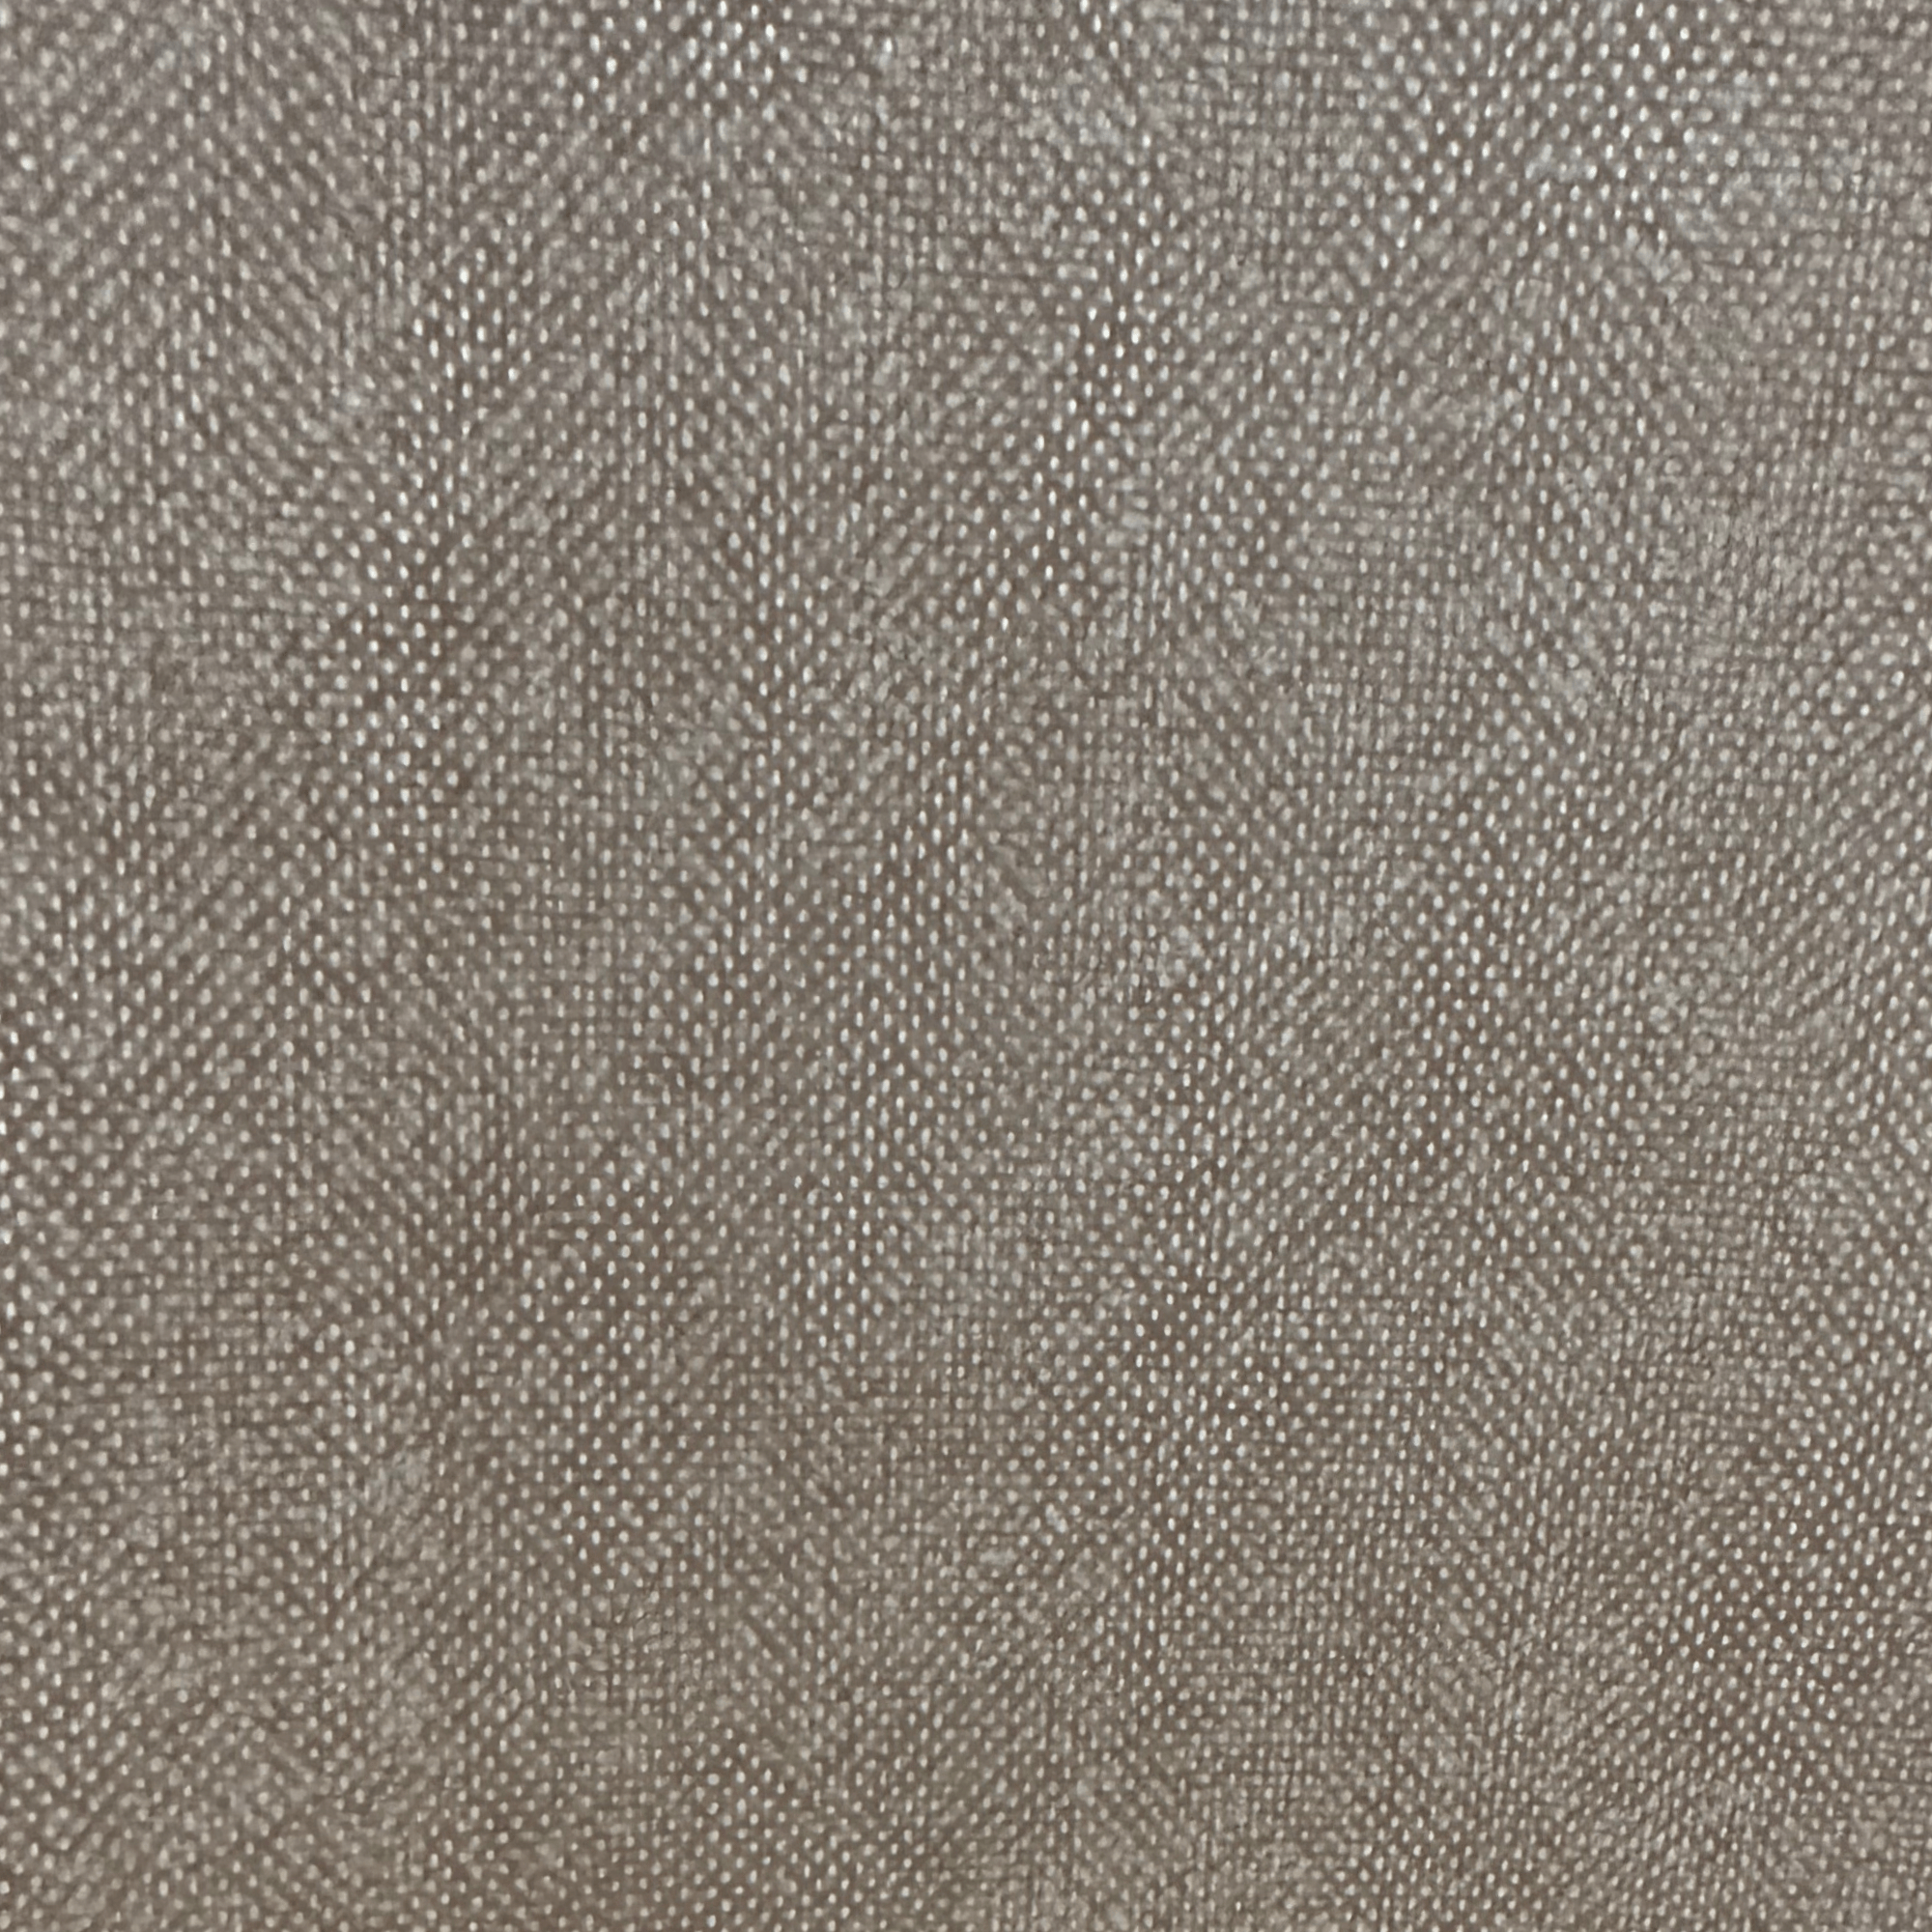 My R-12 - Résine de polyester - 0,6 mm